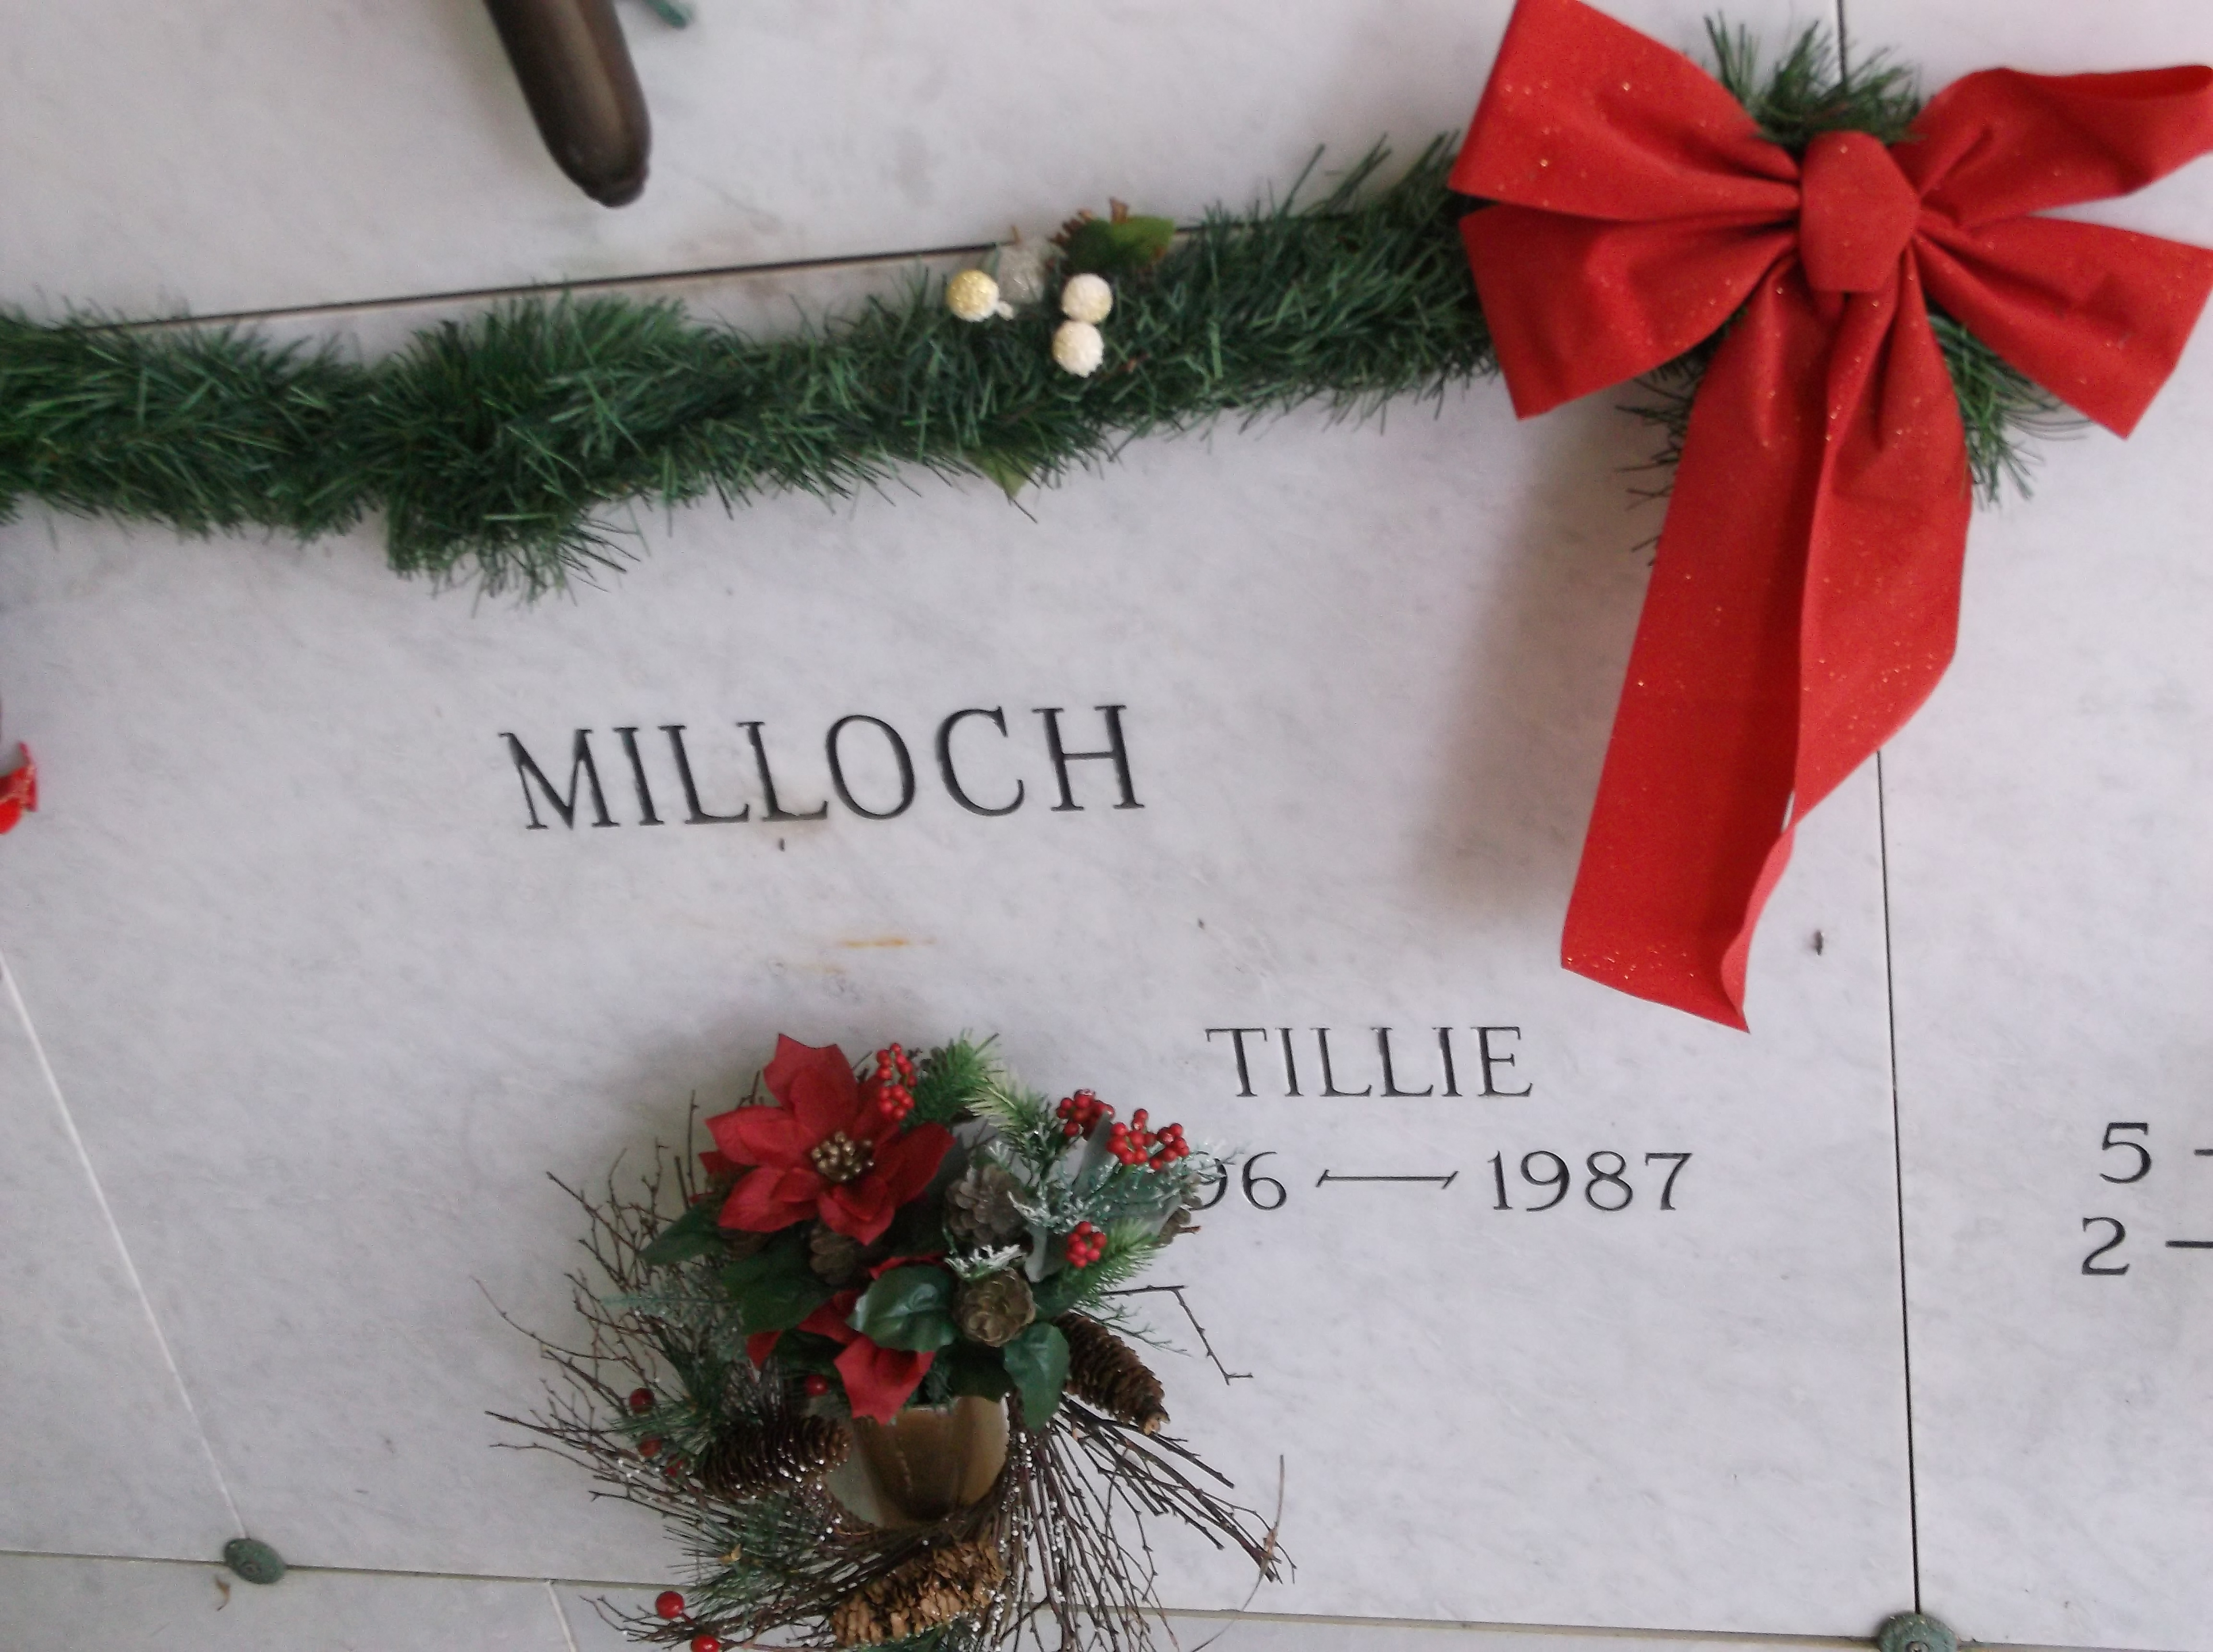 Tillie Milloch